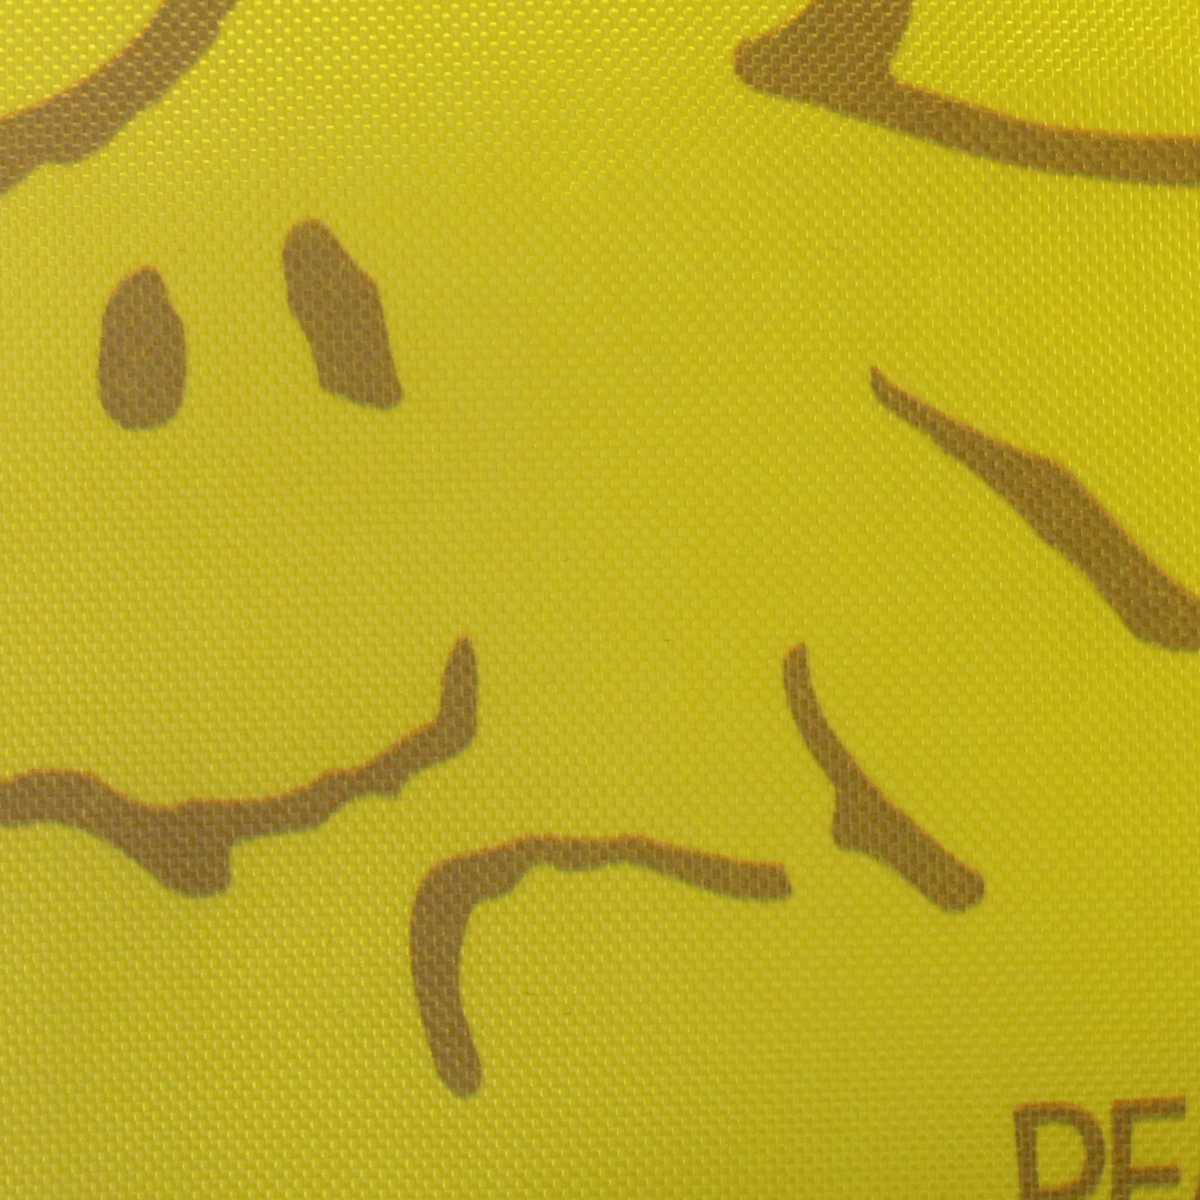 楽天市場 小物 スヌーピー Snoopy Peanuts ミニ巾着 コップ袋 化粧 ポーチ 巾着 小物 入れ 男の子 女の子 スヌーピー F柄 15x15サイズ ガールズ キッズ 小物 全8色 ピアニッシモ